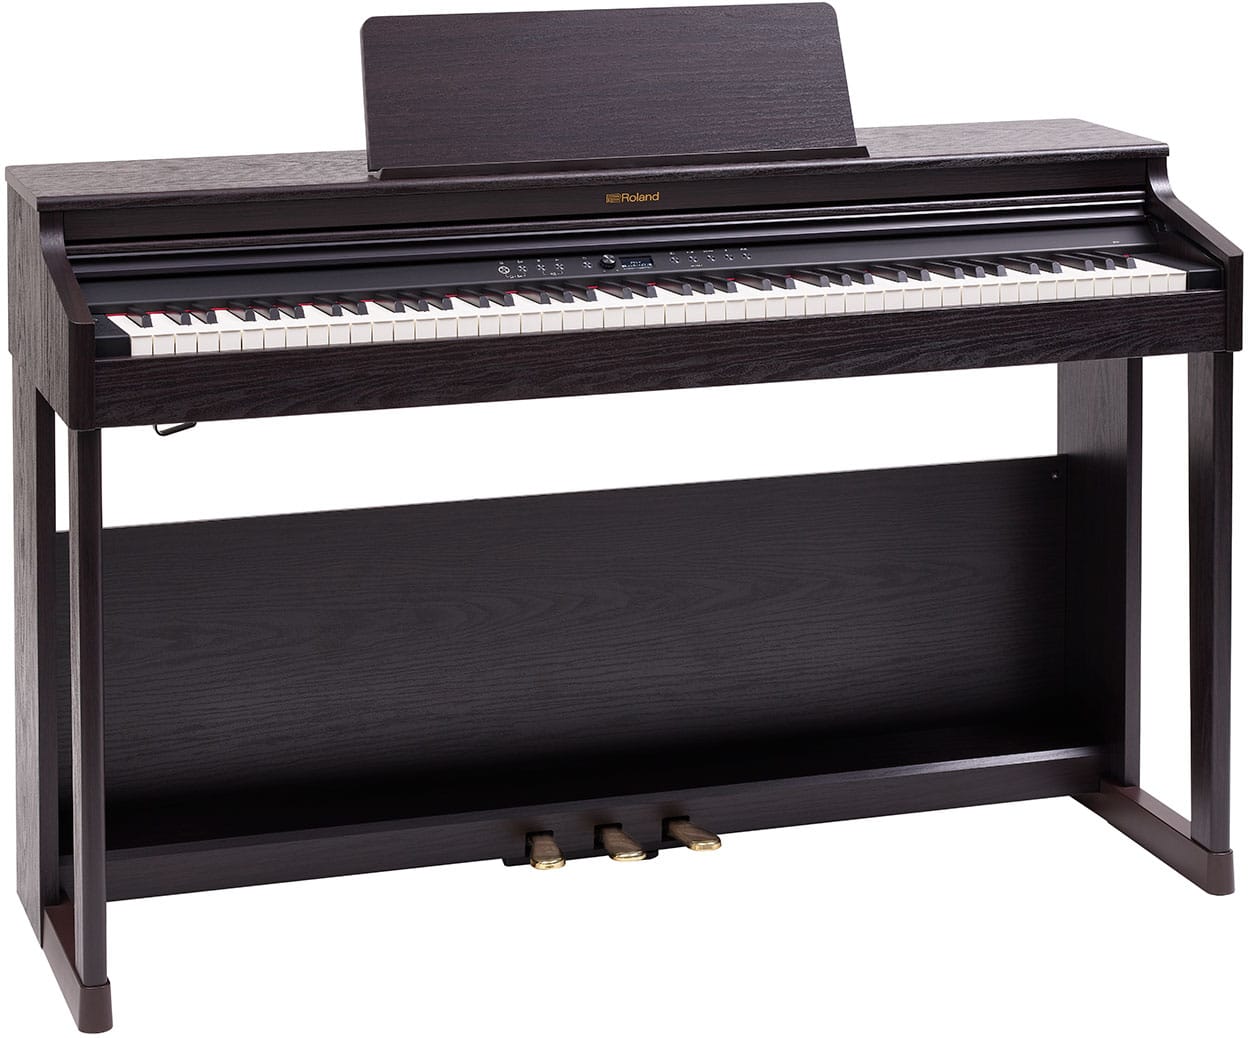 *はじめてのピアノに最適。家族で楽しめるピアノ RP701は、お子さまやピアノ初心者の方にも使いやすく、家族でも楽しんでいただけるエントリー・モデルのデジタルピアノ。はじめての1台に最適なモデルです。はじめてだからこそ、音、タッチ、ペダルなど、ピアノの基本性能にこだわっています。表現力に定評のある「 […]